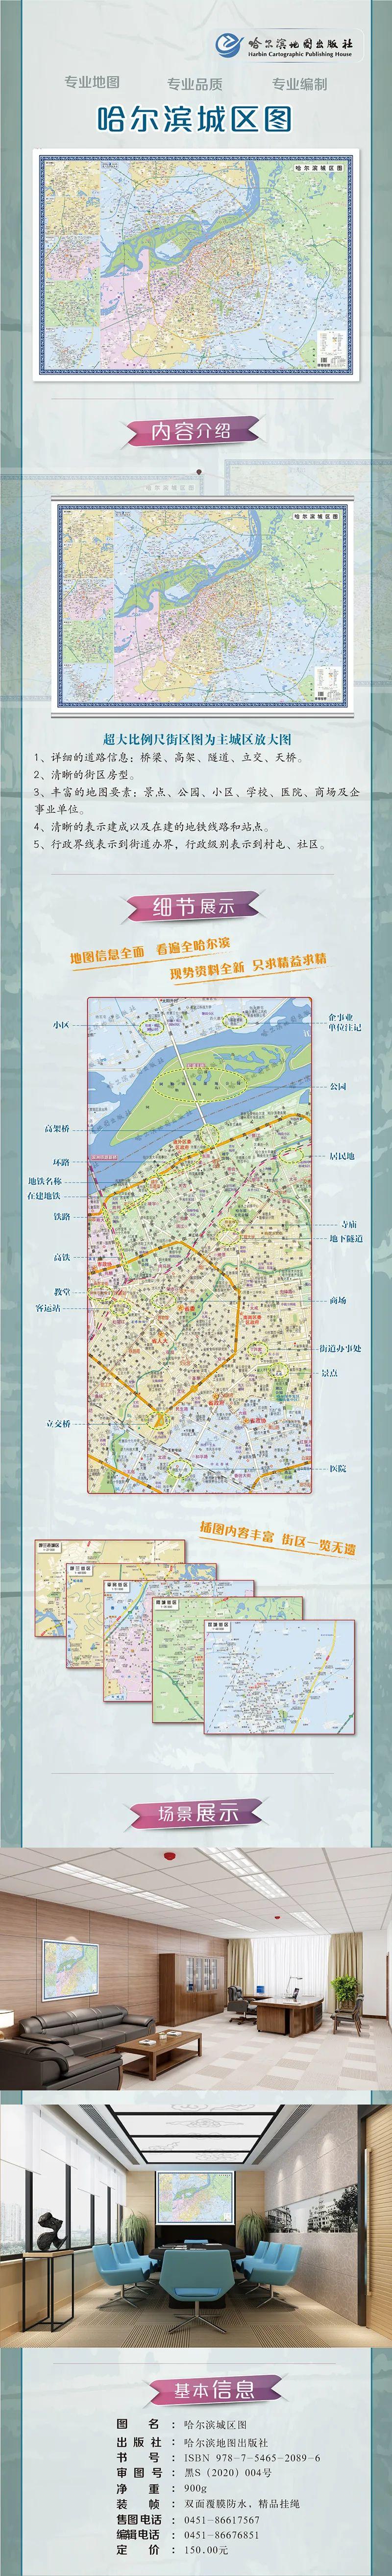 【地图秀场】哈尔滨市城区图